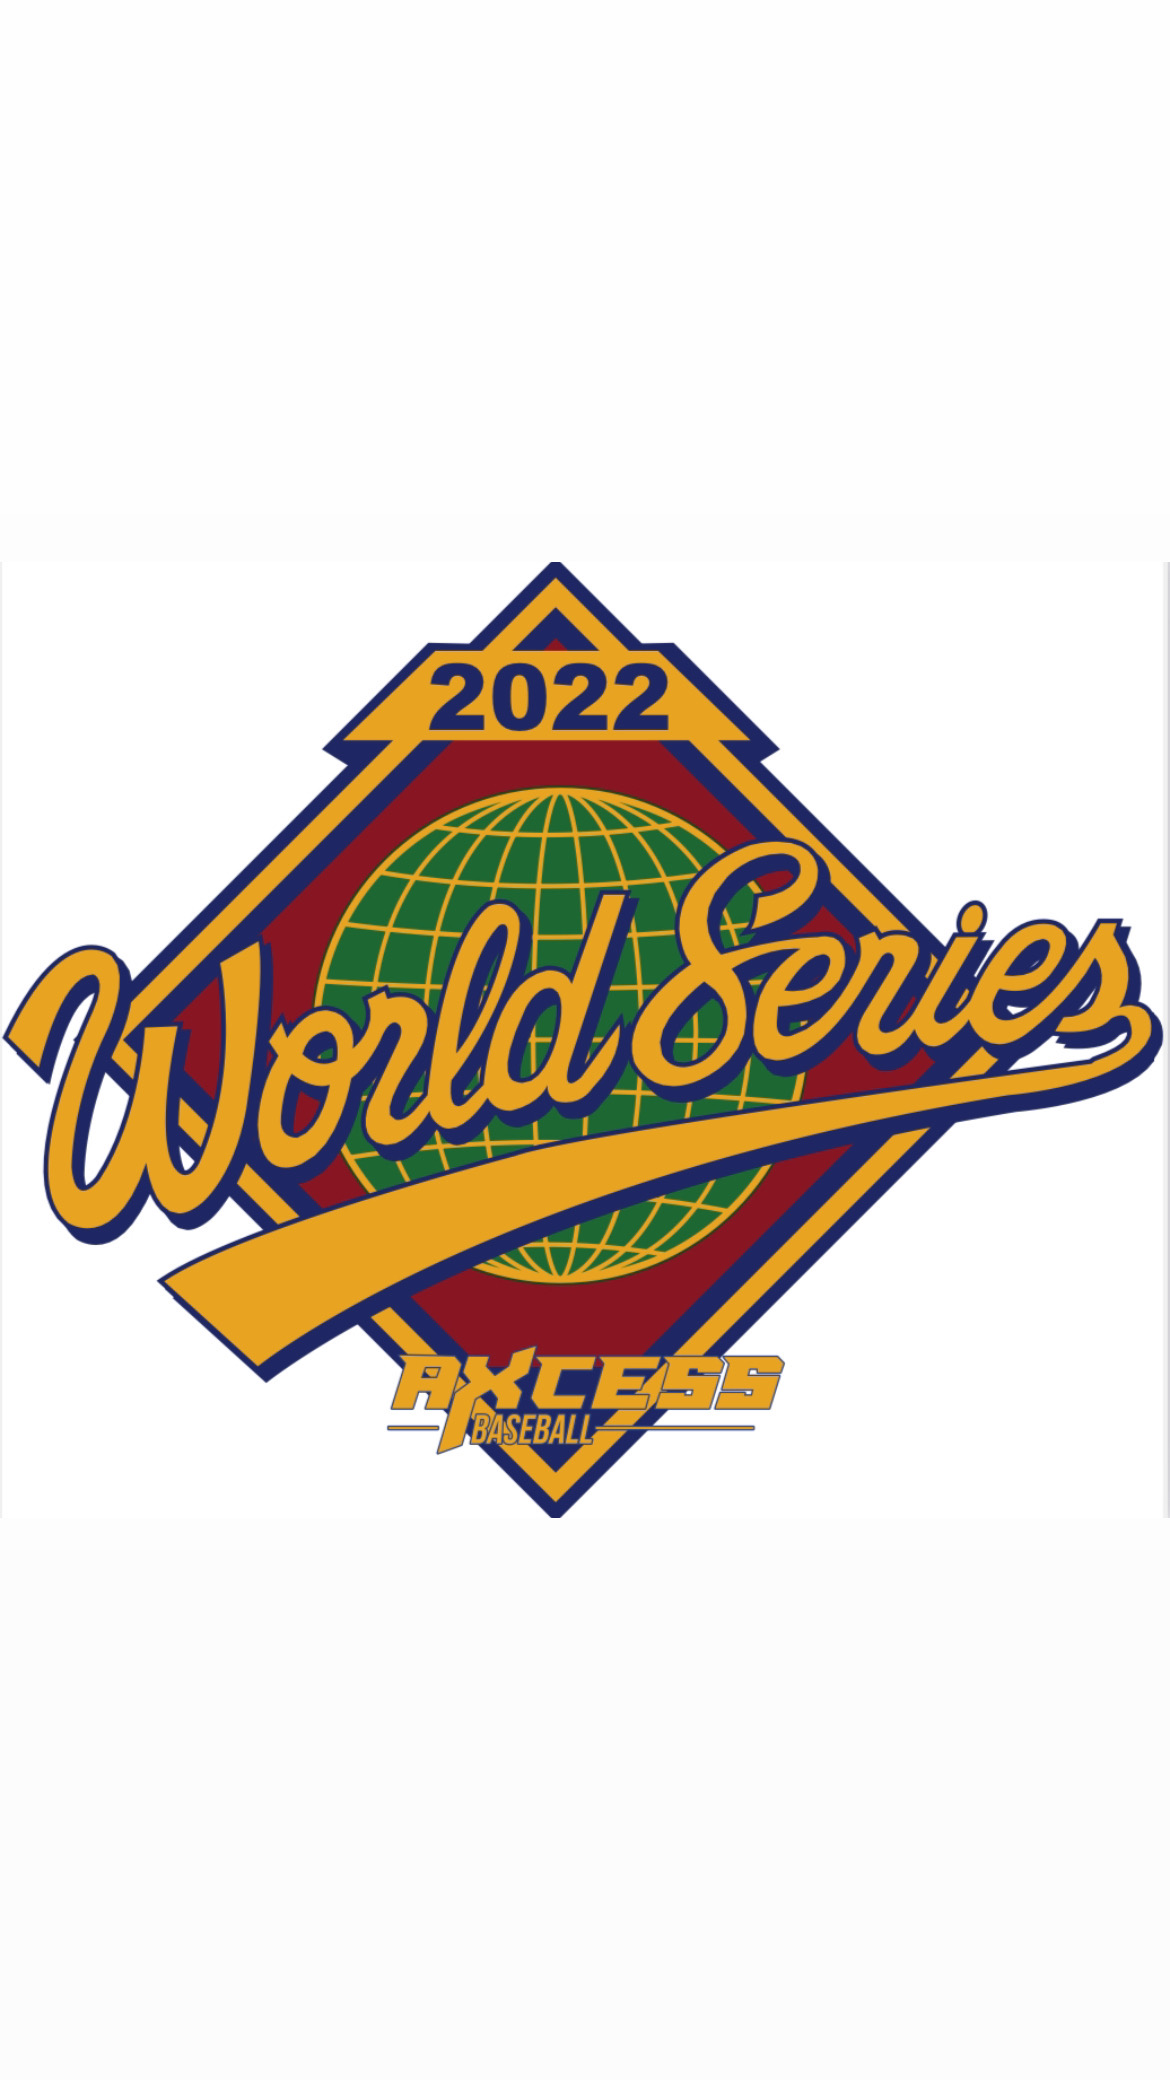 Axcess World Series Schedule - Axcess Baseball